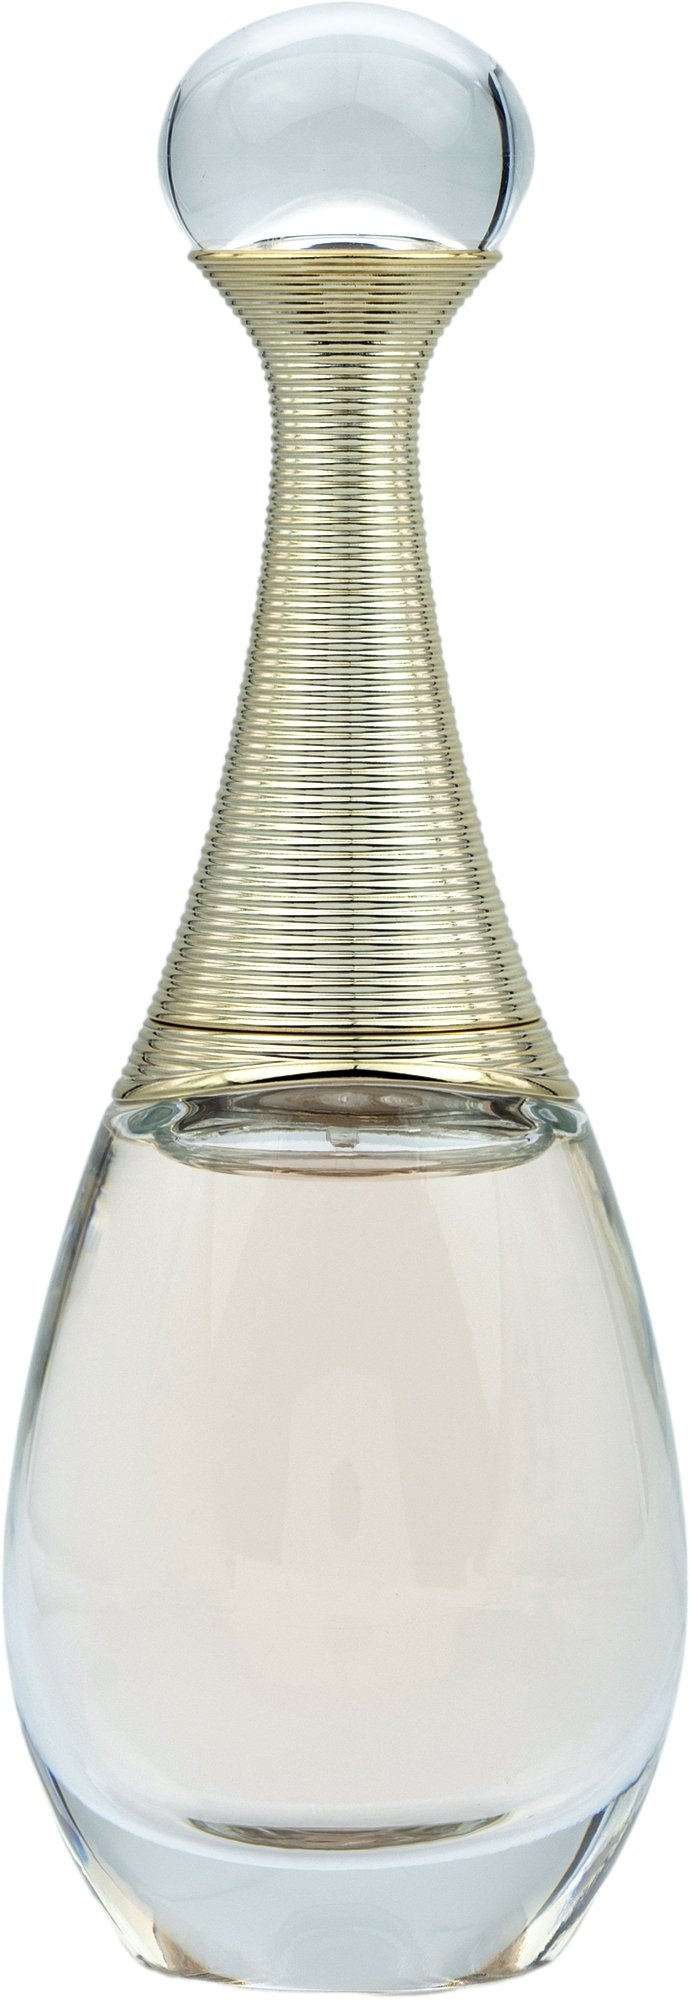 Dior J'adore Eau de Parfum 100 ml ab 12,90 € im Preisvergleich!